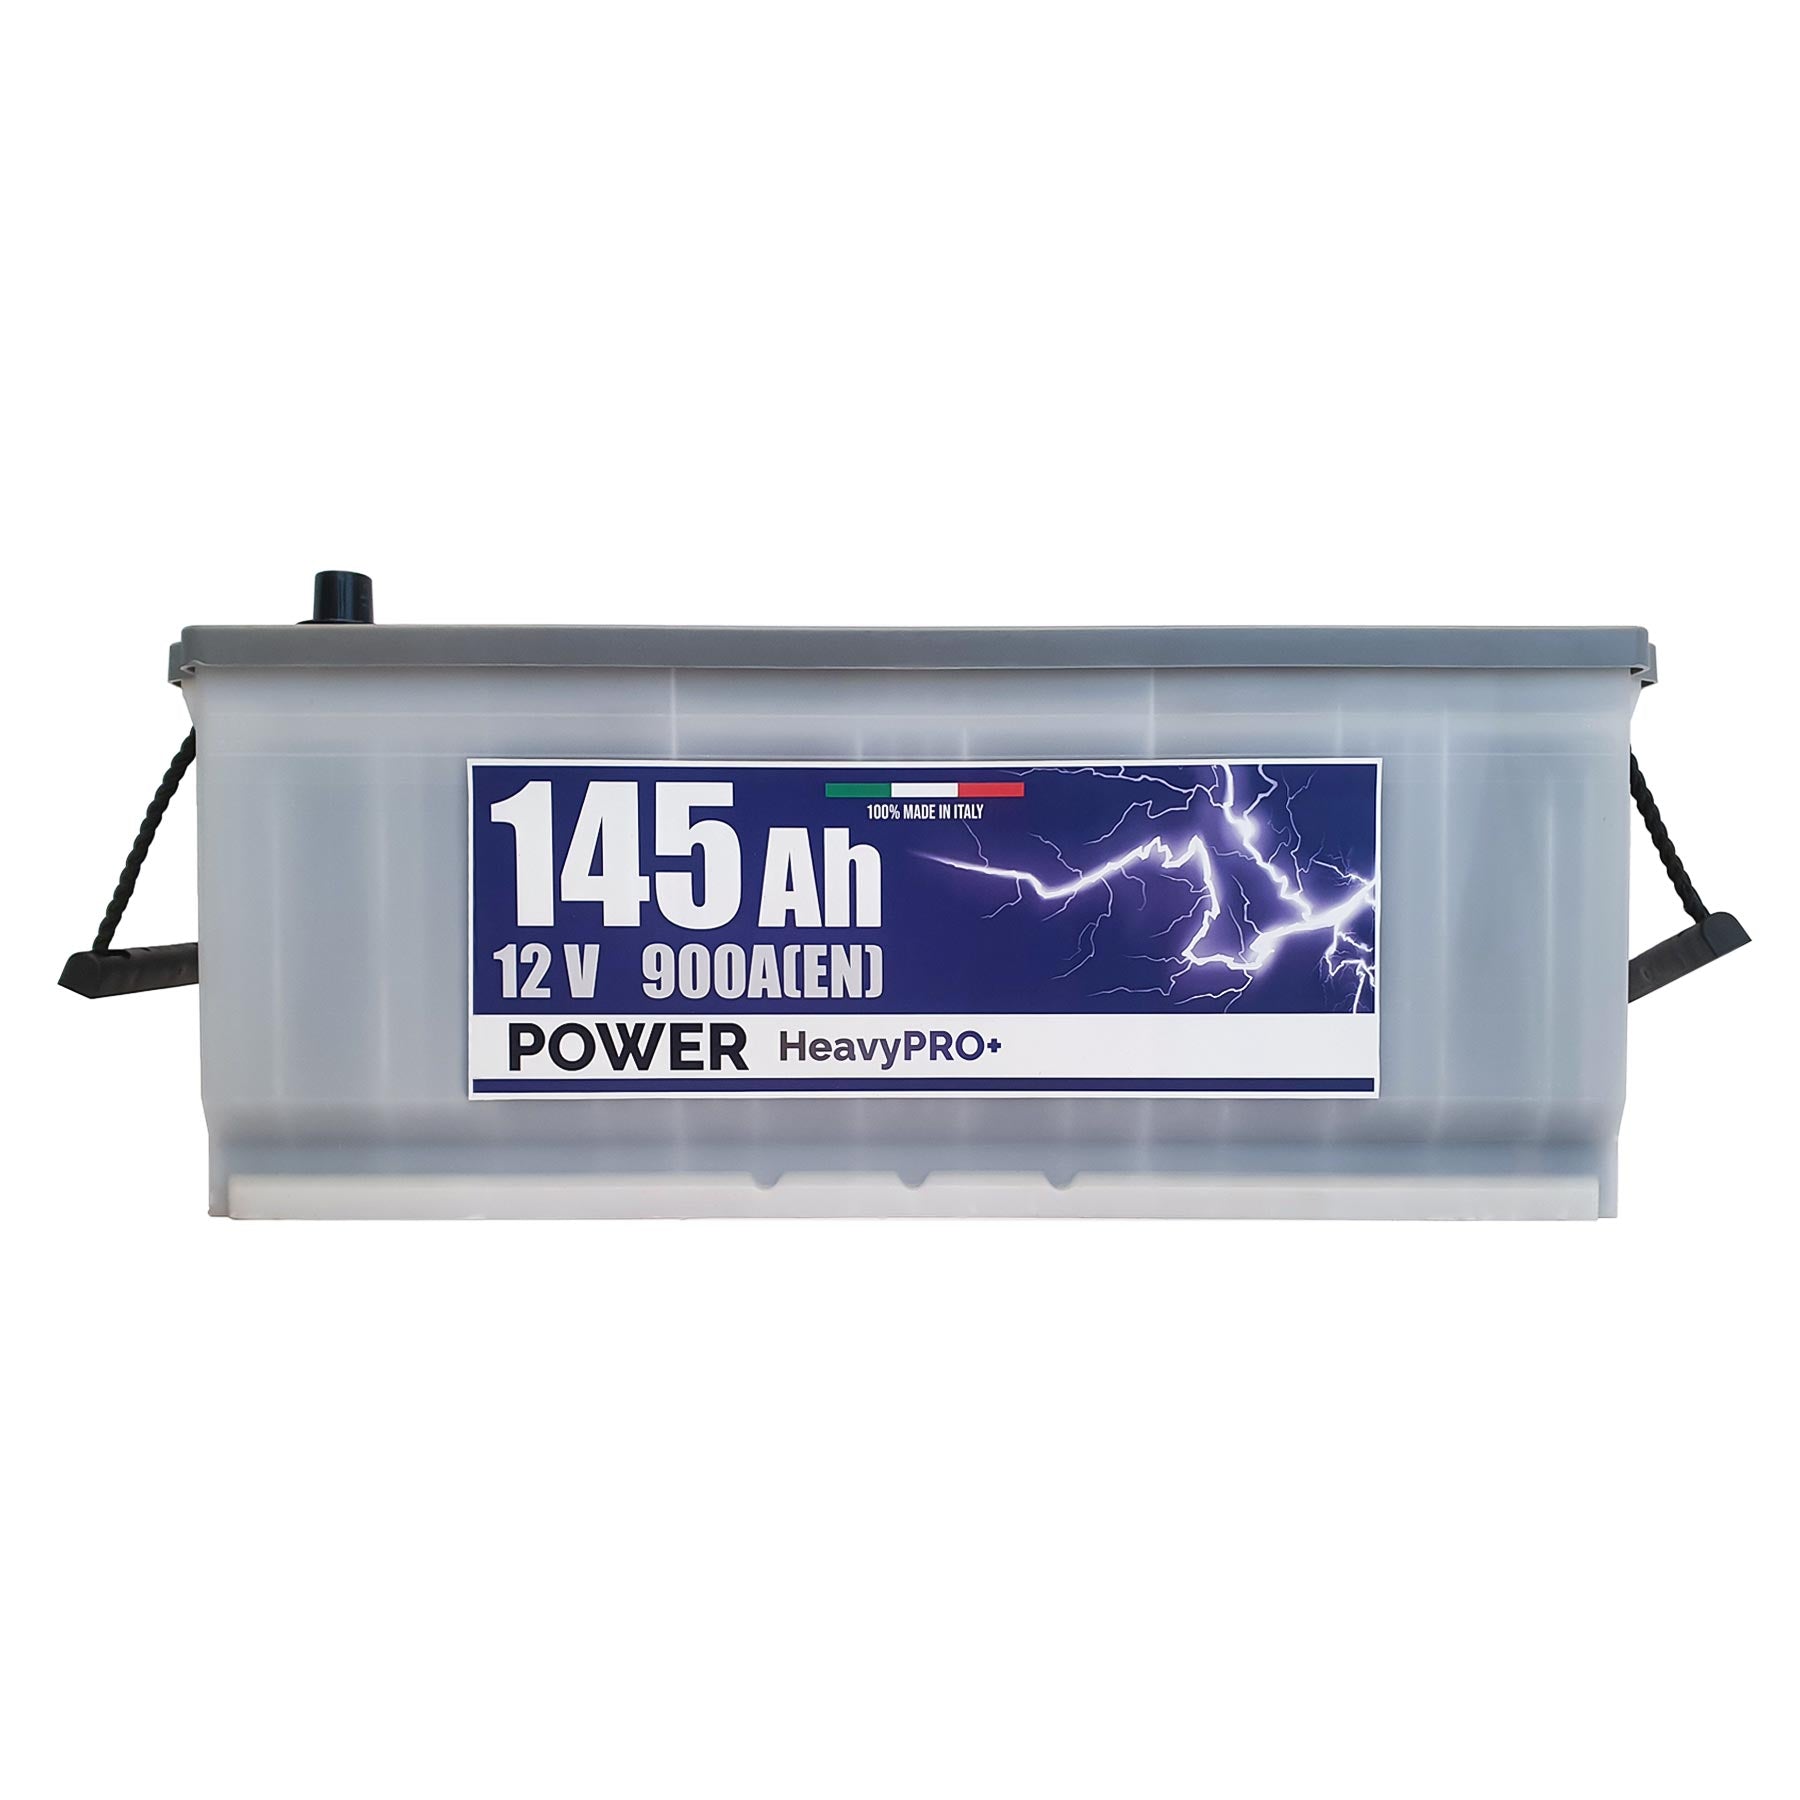 Batteria Power 145Ah, 12V, 900A, 513x189x223mm